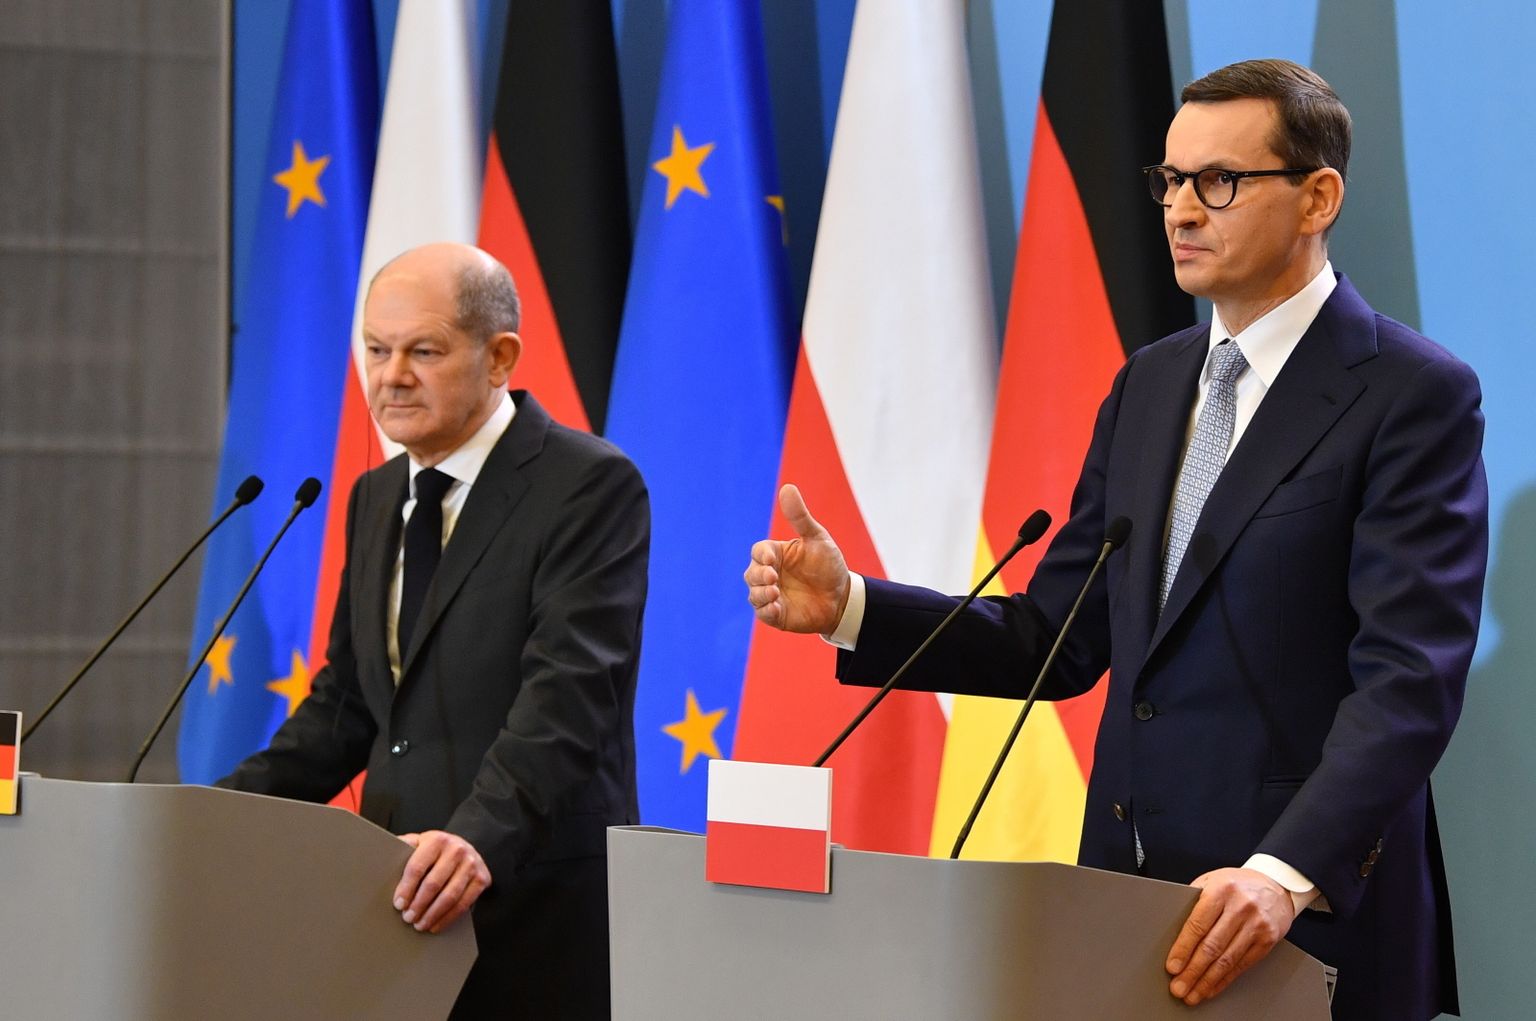 Polijas premjerministrs Mateušs Moraveckis (pa labi) un Vācijas kanclers Olafs Šolcs